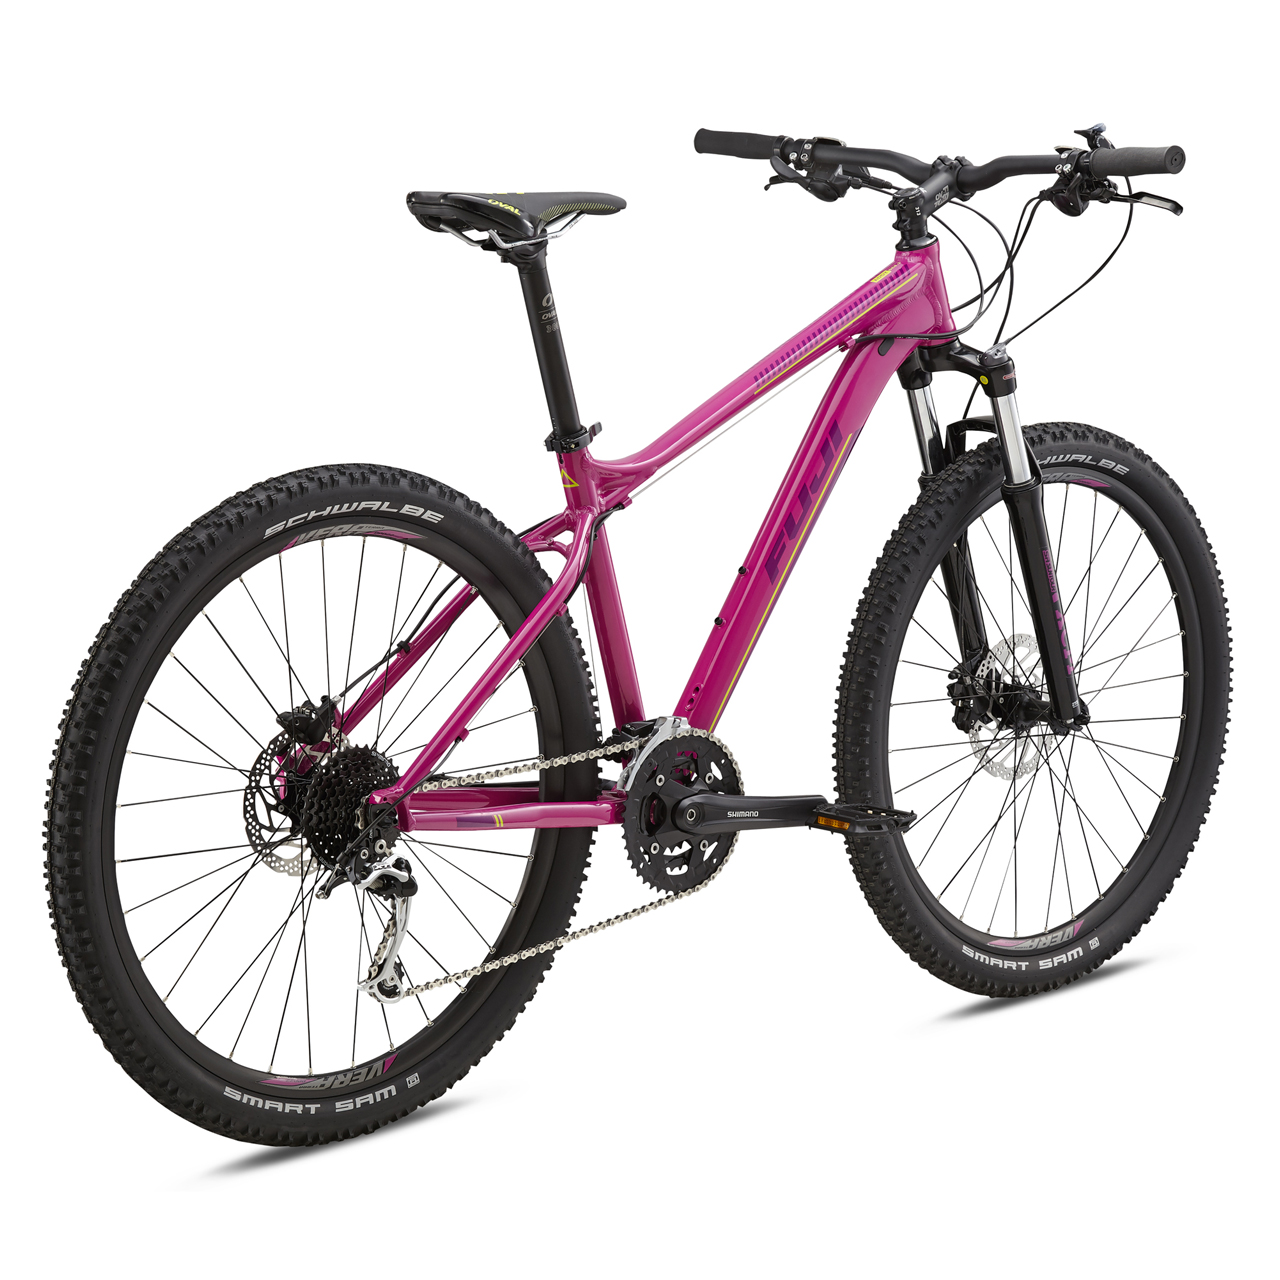 دوچرخه کوهستان بانوان فوجی Addy 1.3 سایز 27.5 رنگ صورتی2018